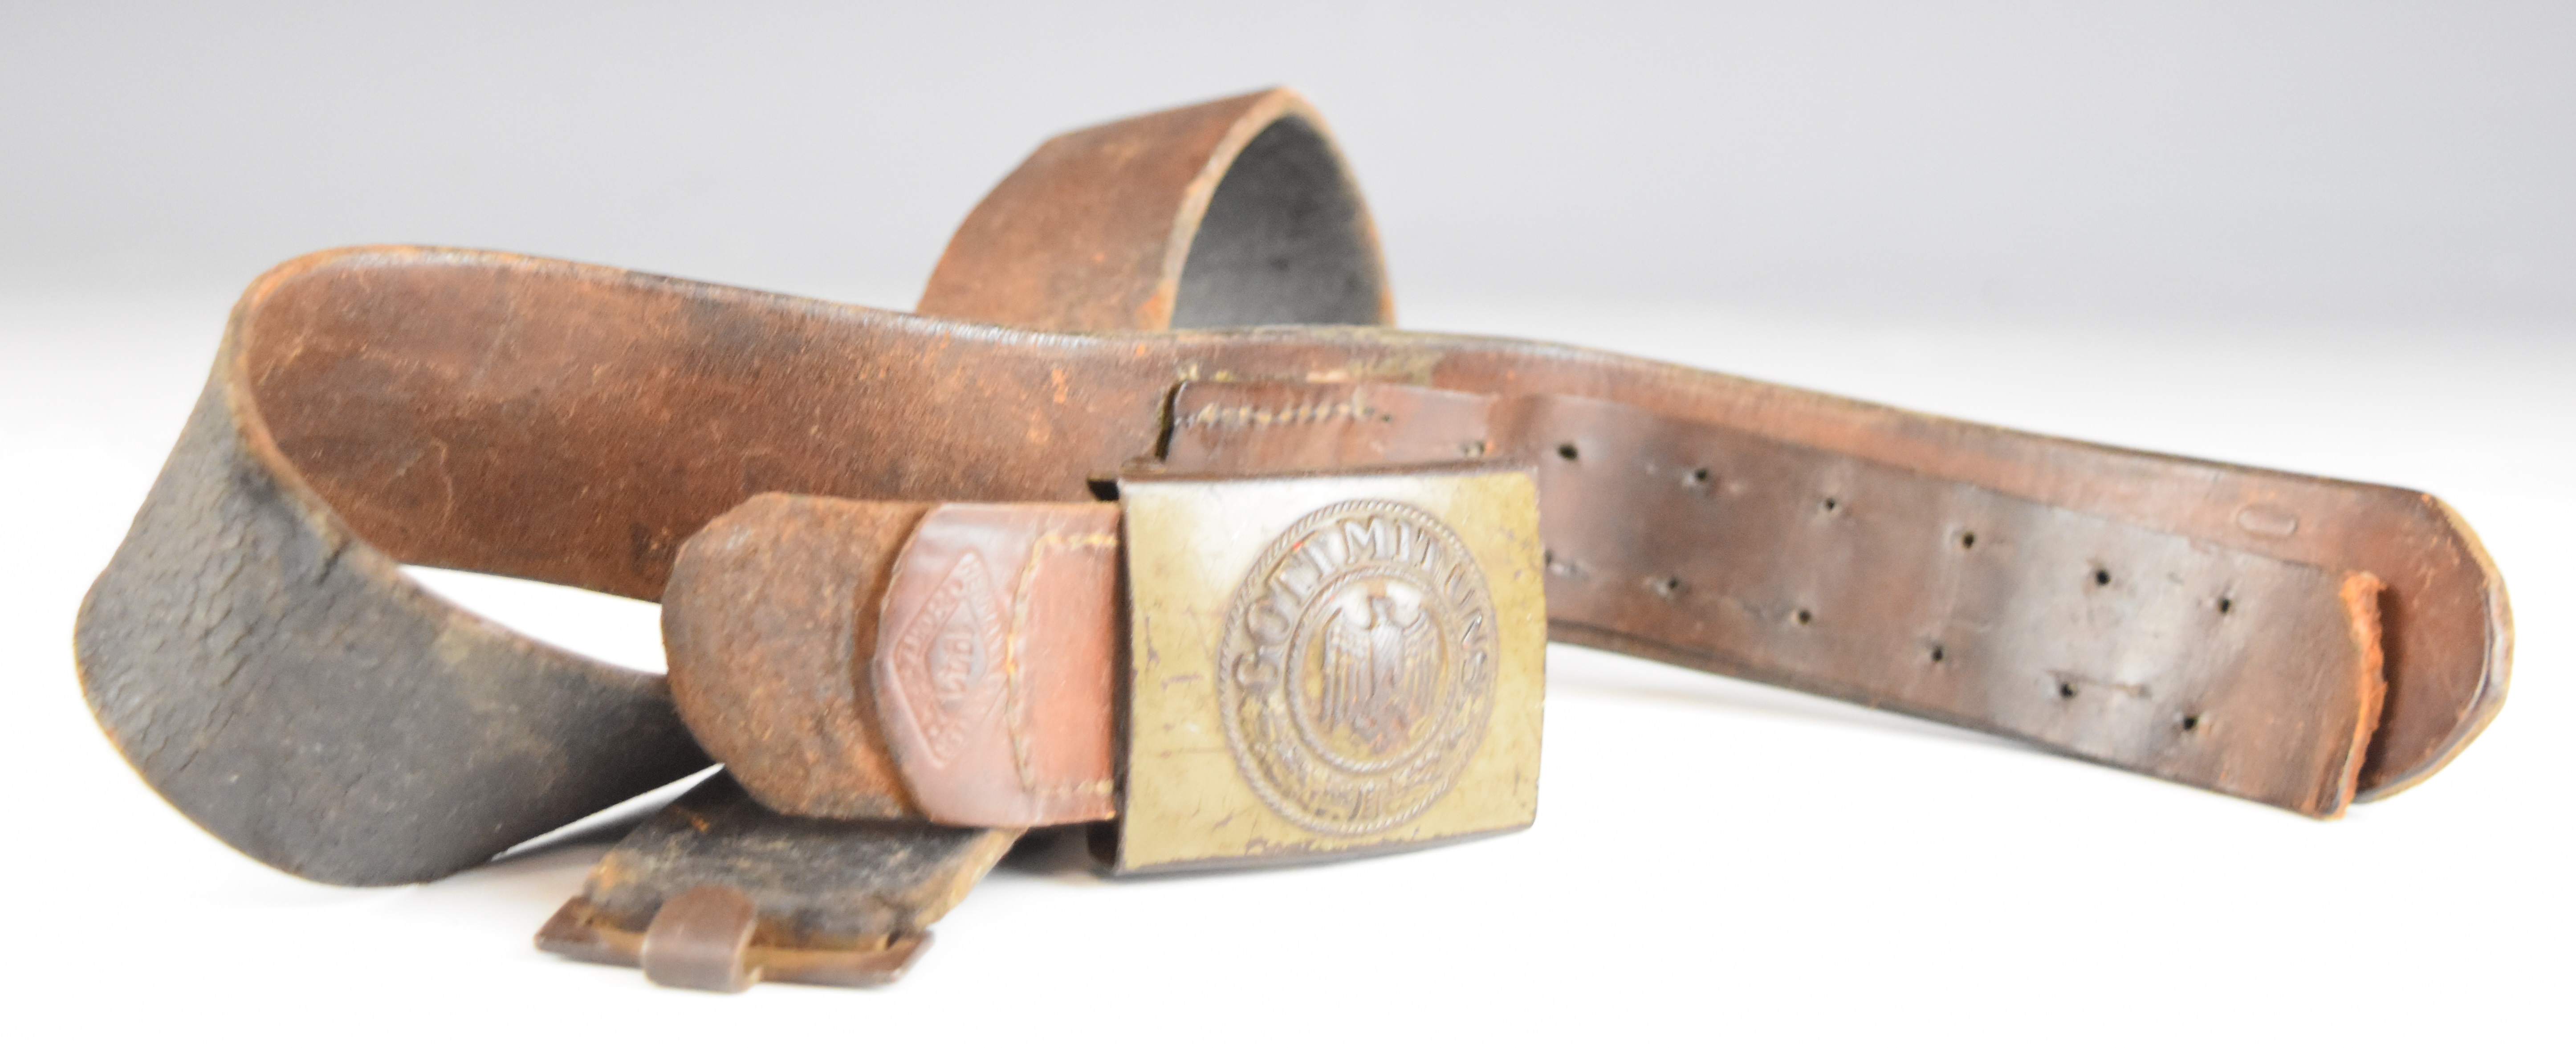 German WW2 Nazi Third Reich belt buckle and belt stamped Herman Knoller, Pforzhfim 1944